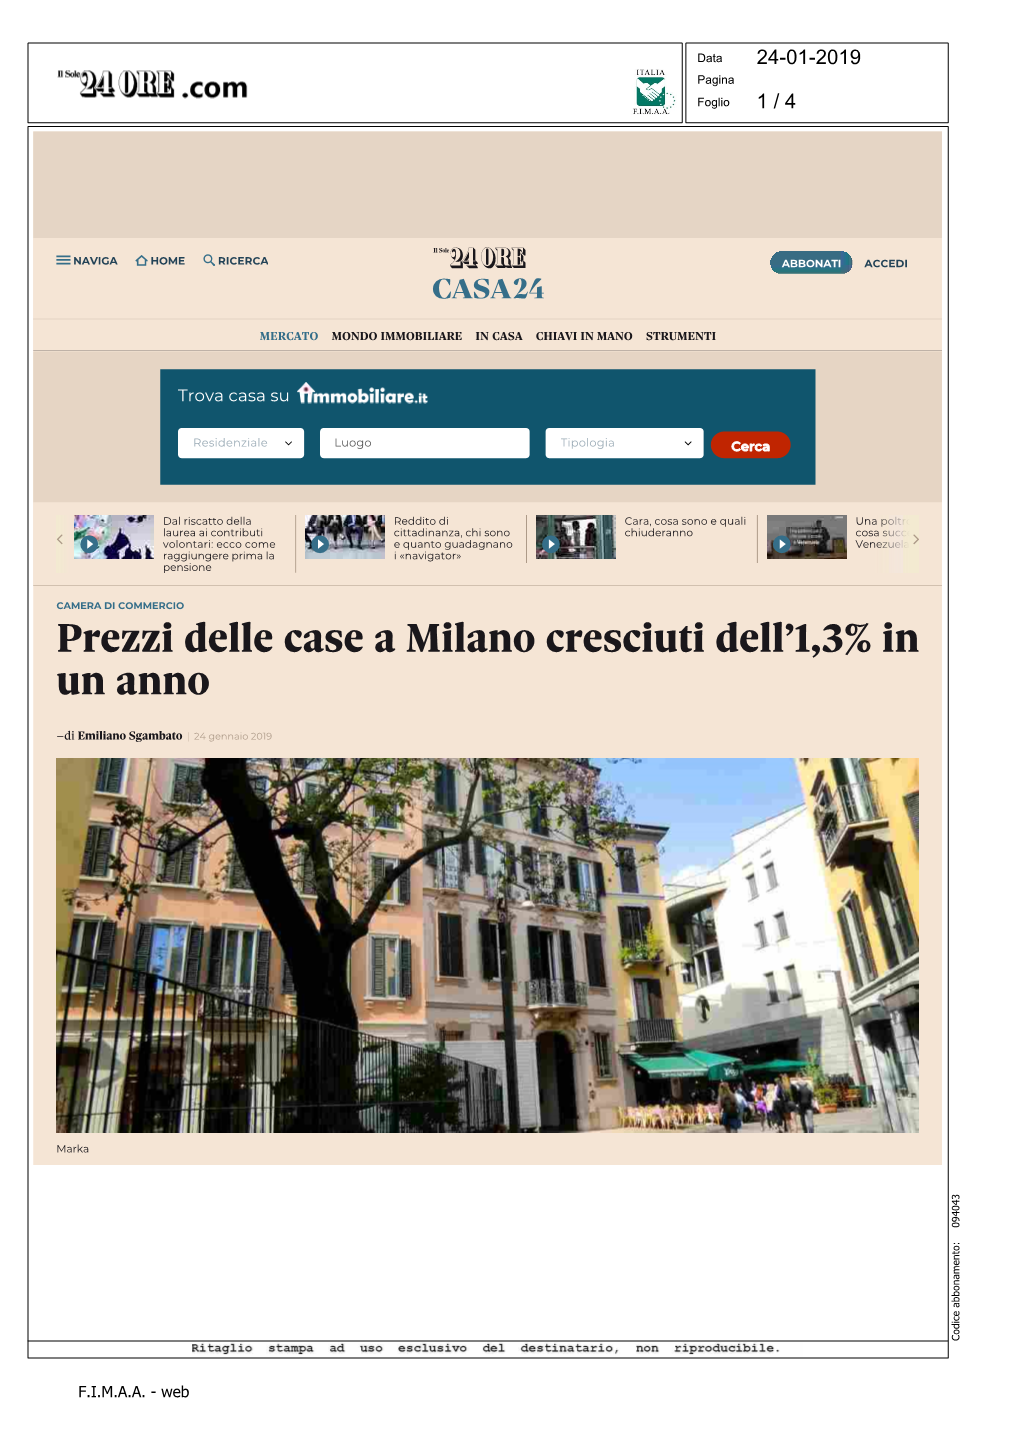 Prezzi Delle Case a Milano Cresciuti Dell'1,3% in Un Anno